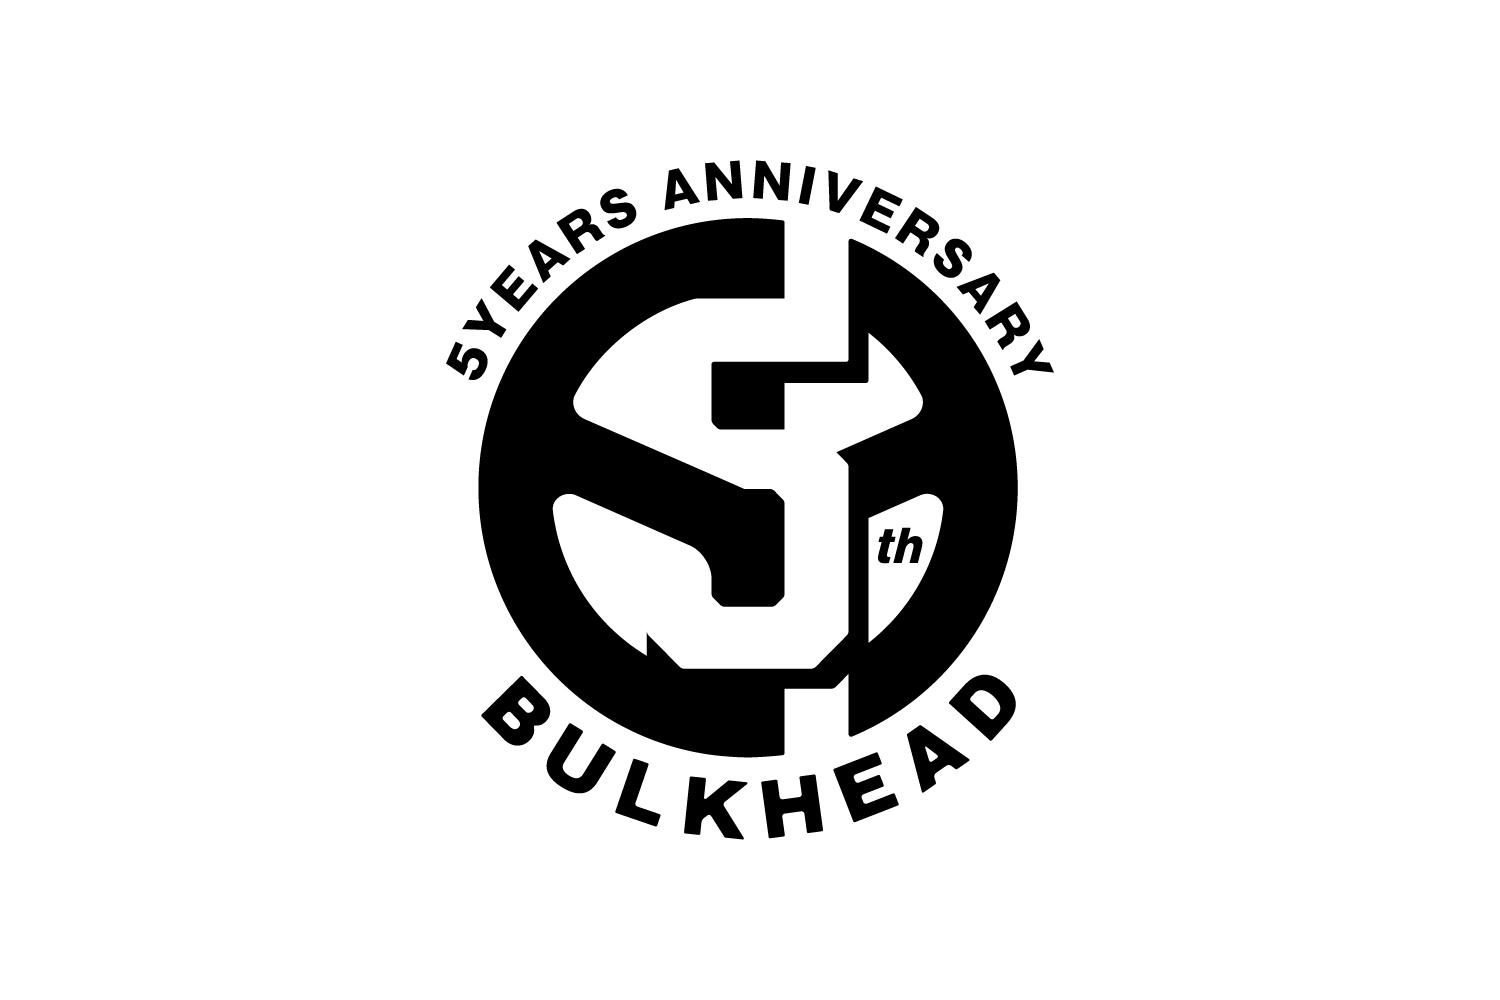 BULKHEAD バルクヘッド 5周年 ロゴデザイン